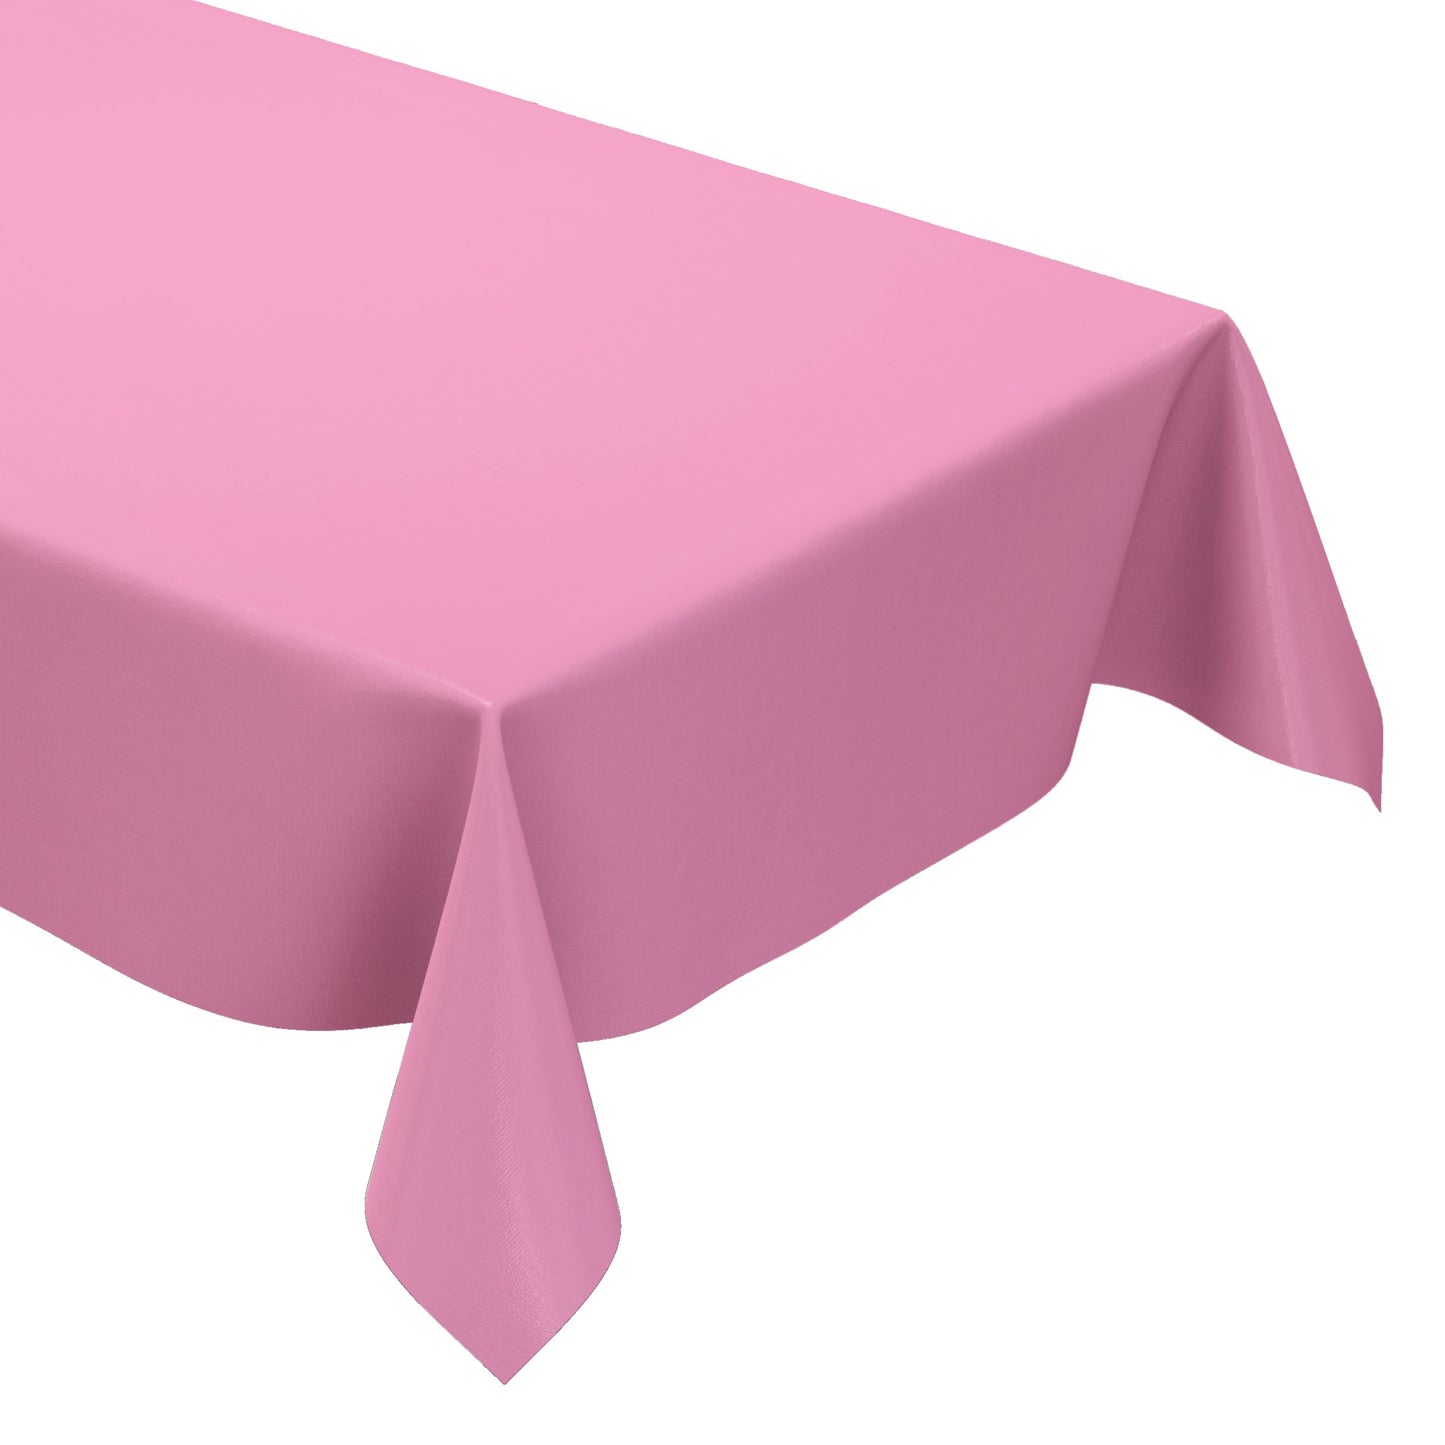 KEVKUS Wachstuch Tischdecke uni 210 einfarbig rosa eckig rund oval